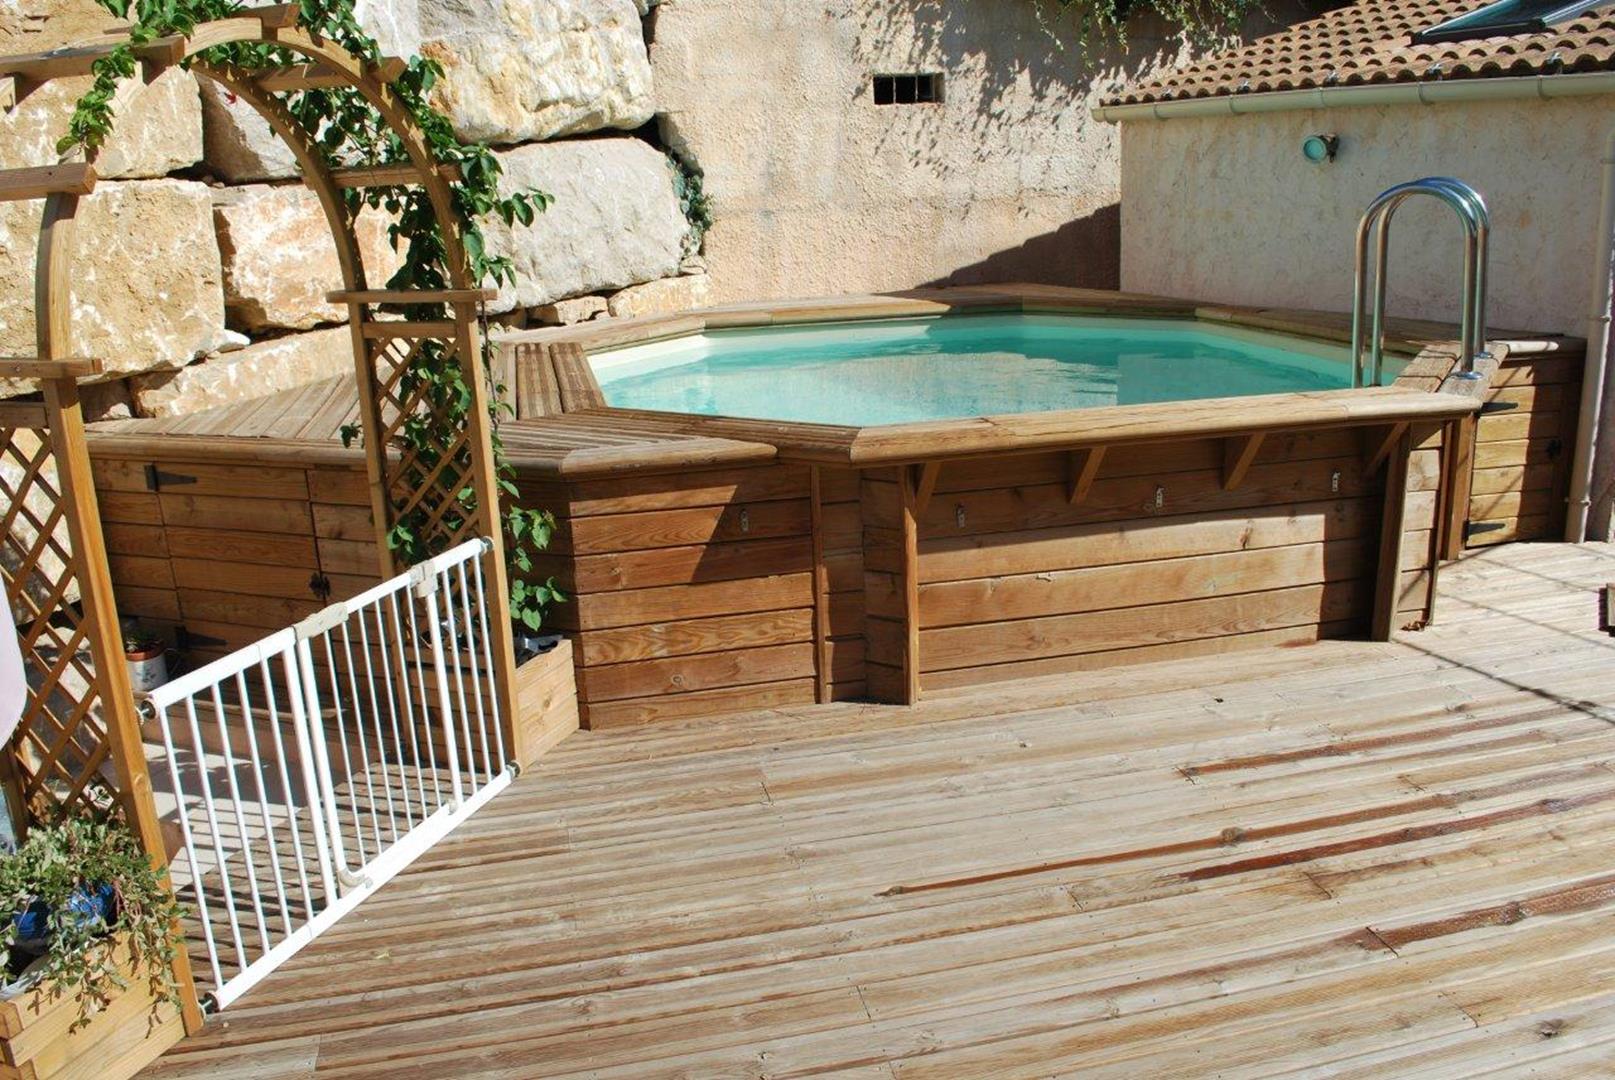 Difloisirs : Une piscine en bois haut de gamme qui dure dans le temps